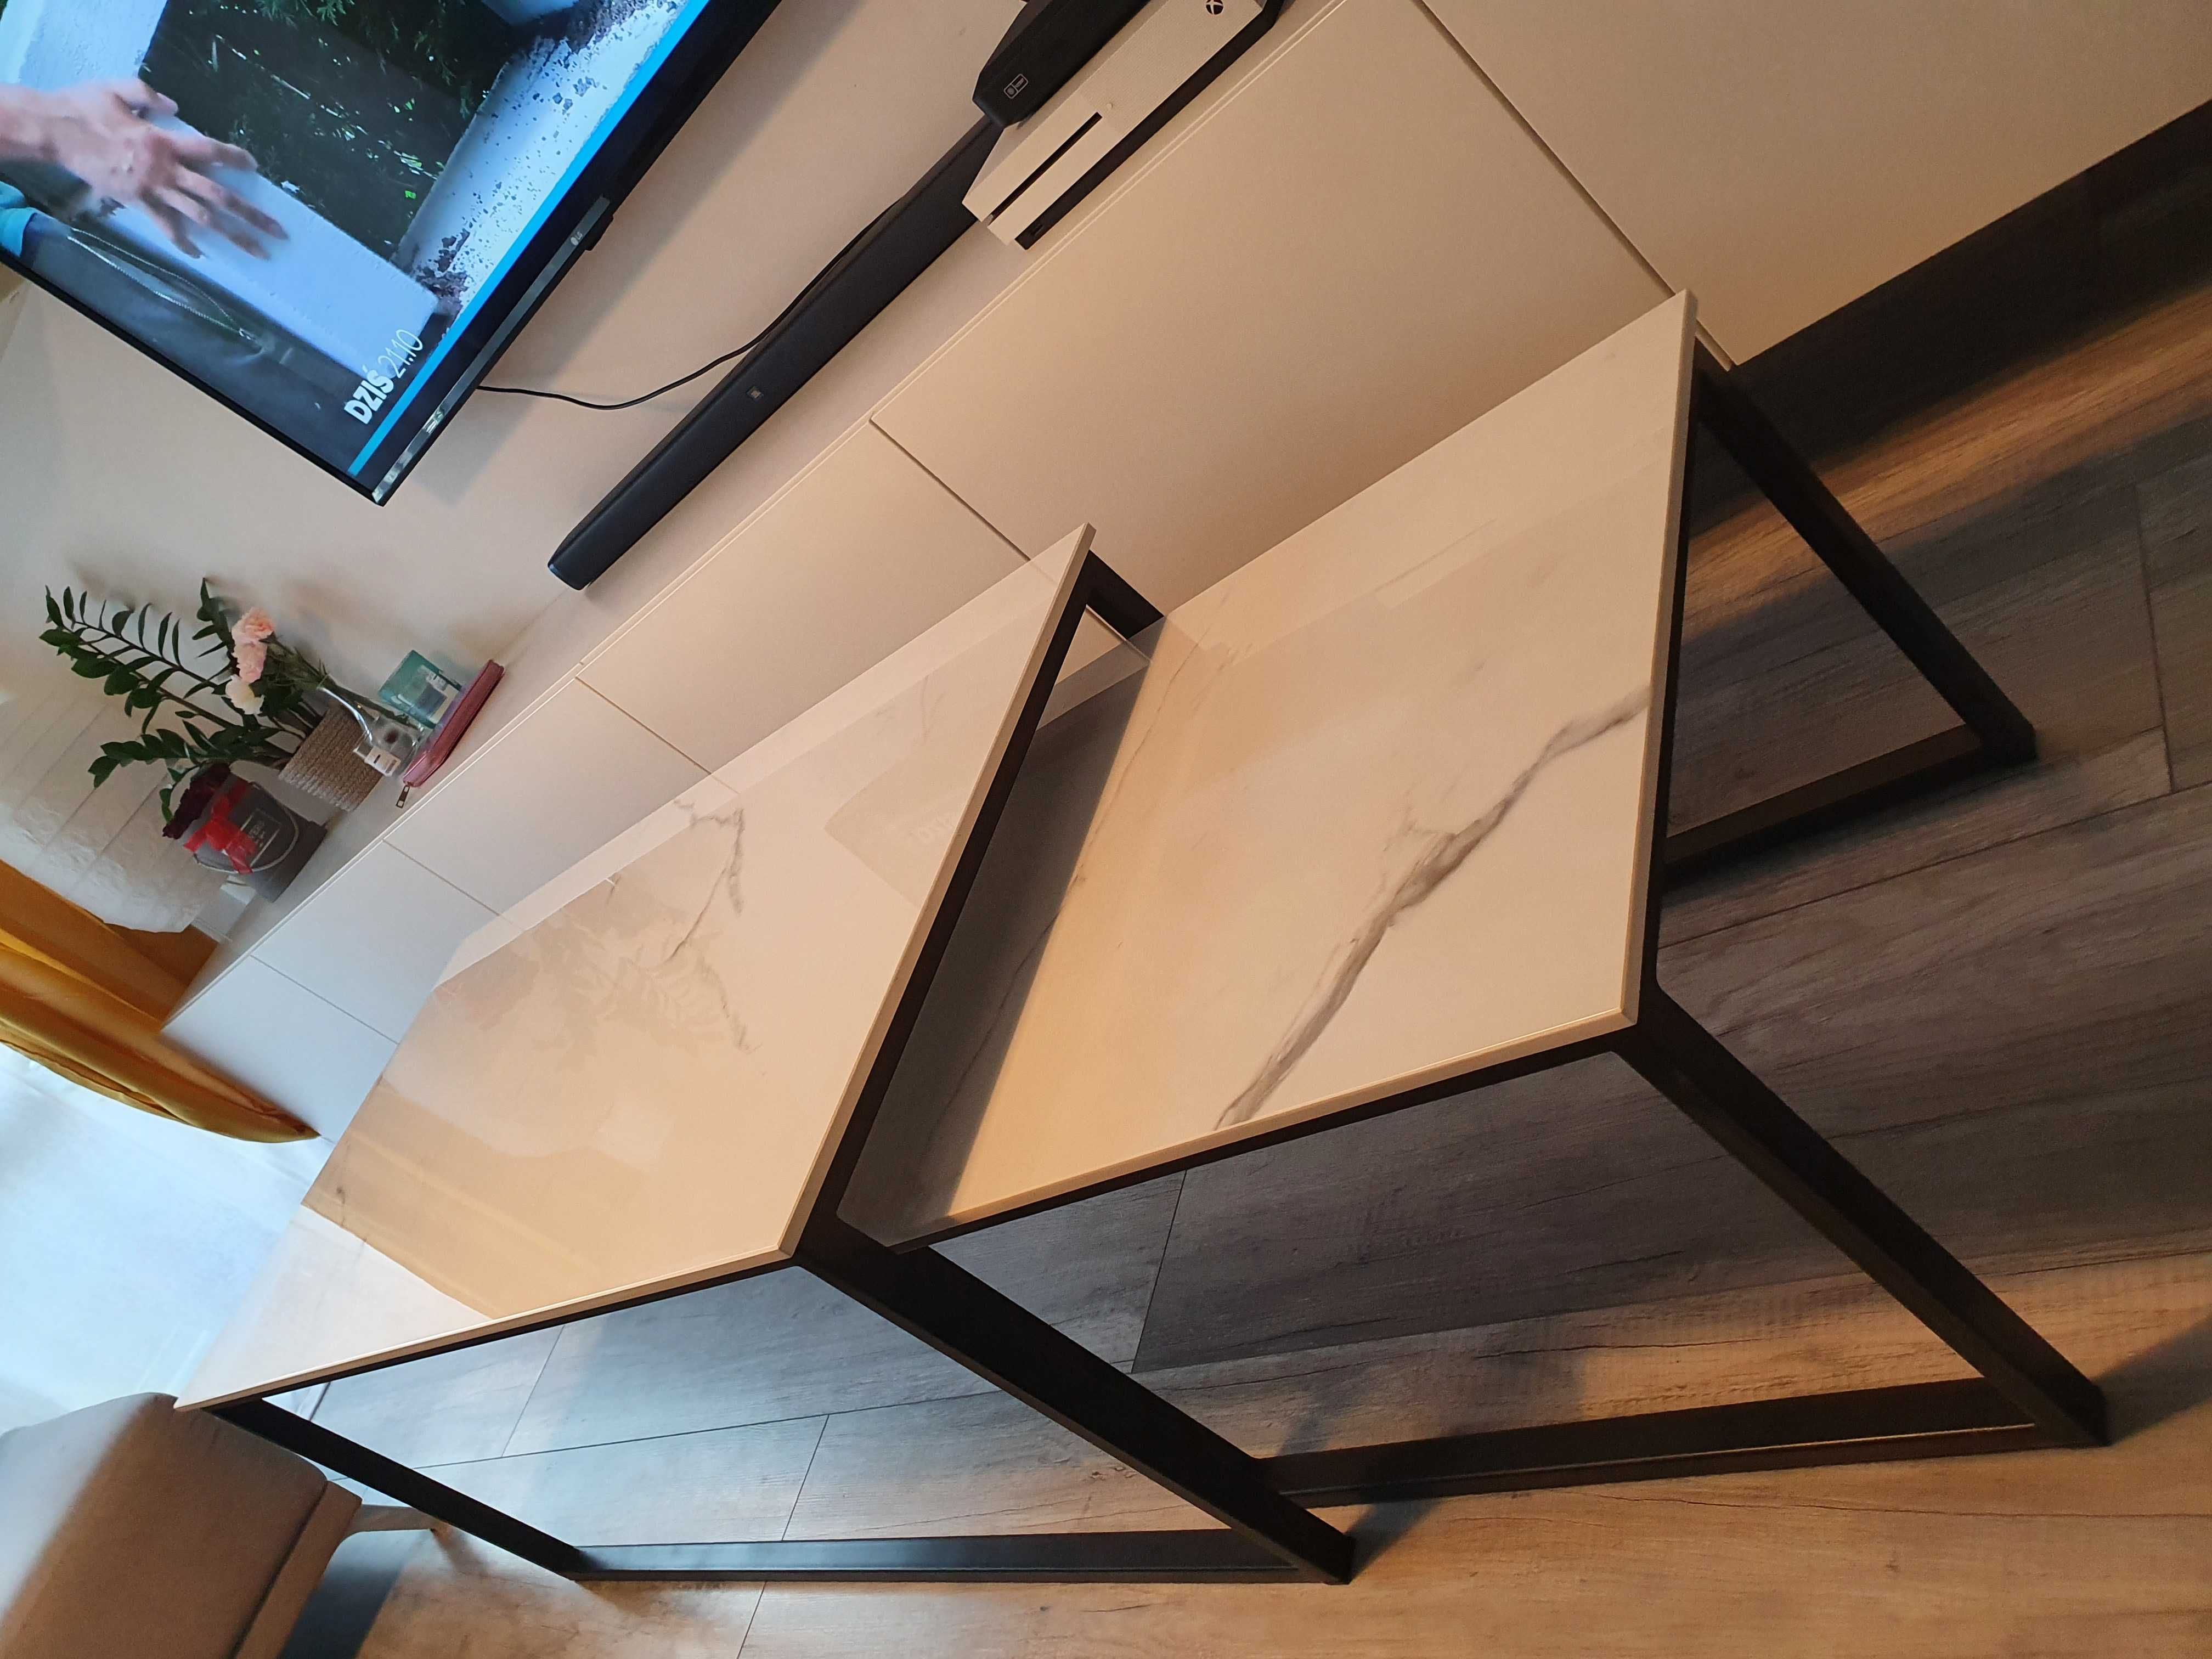 Stół/ława/biurko/stolik-na wymiar-spiek kwarcowy/drewn-industrial/loft